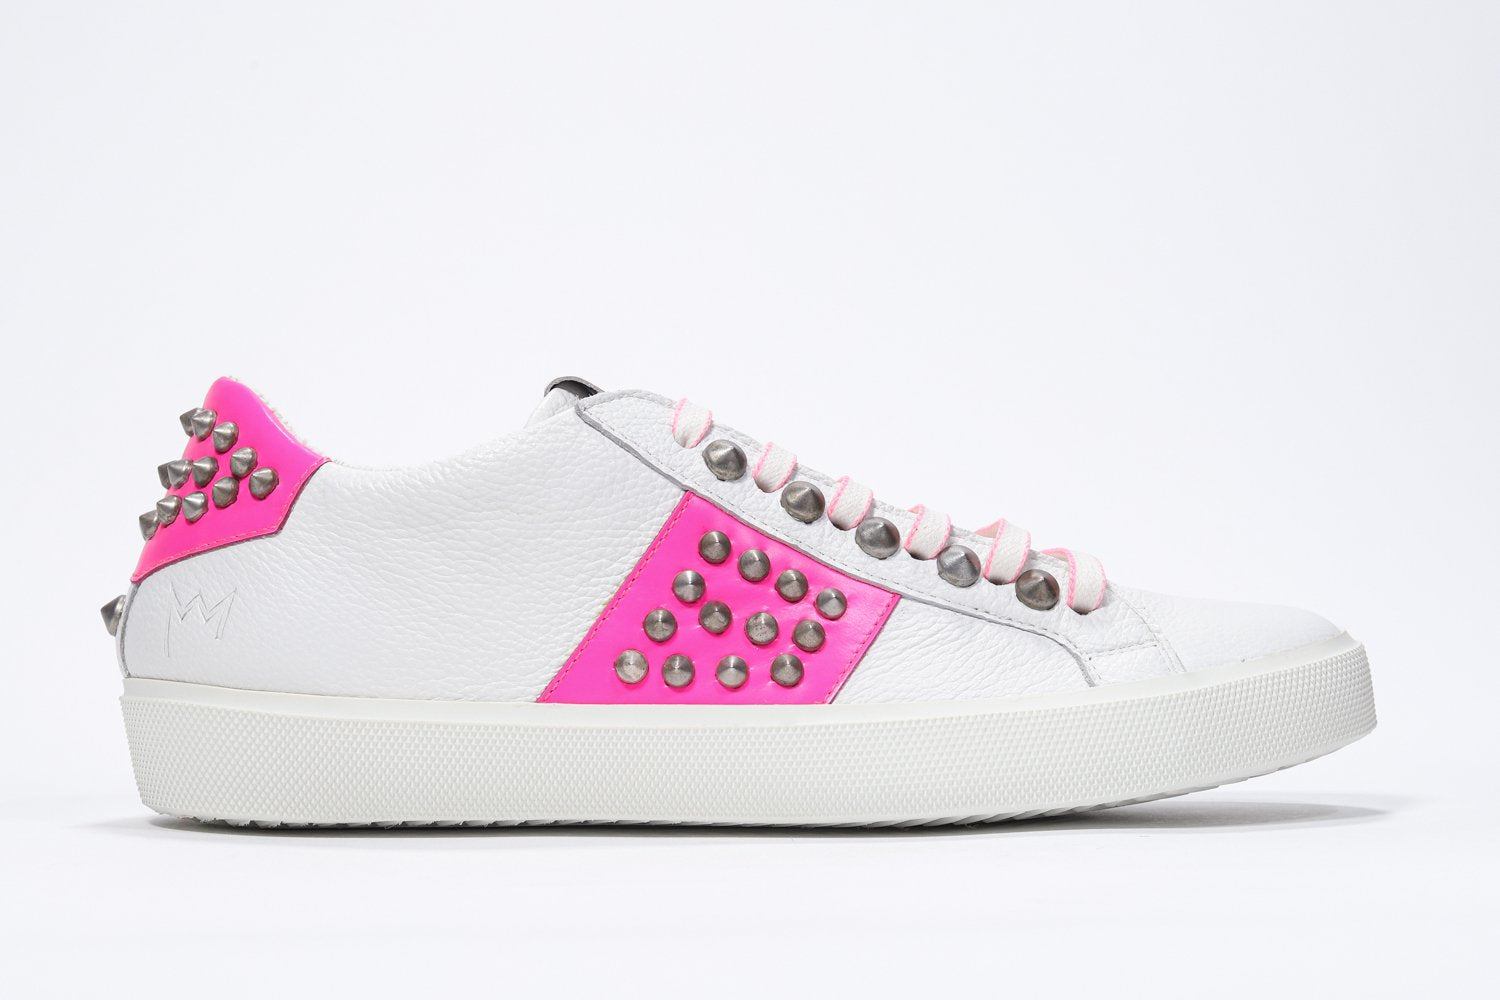 Profilo laterale di BASSE bianco e rosa neon sneaker. Tomaia in pelle con borchie e suola in gomma bianca.